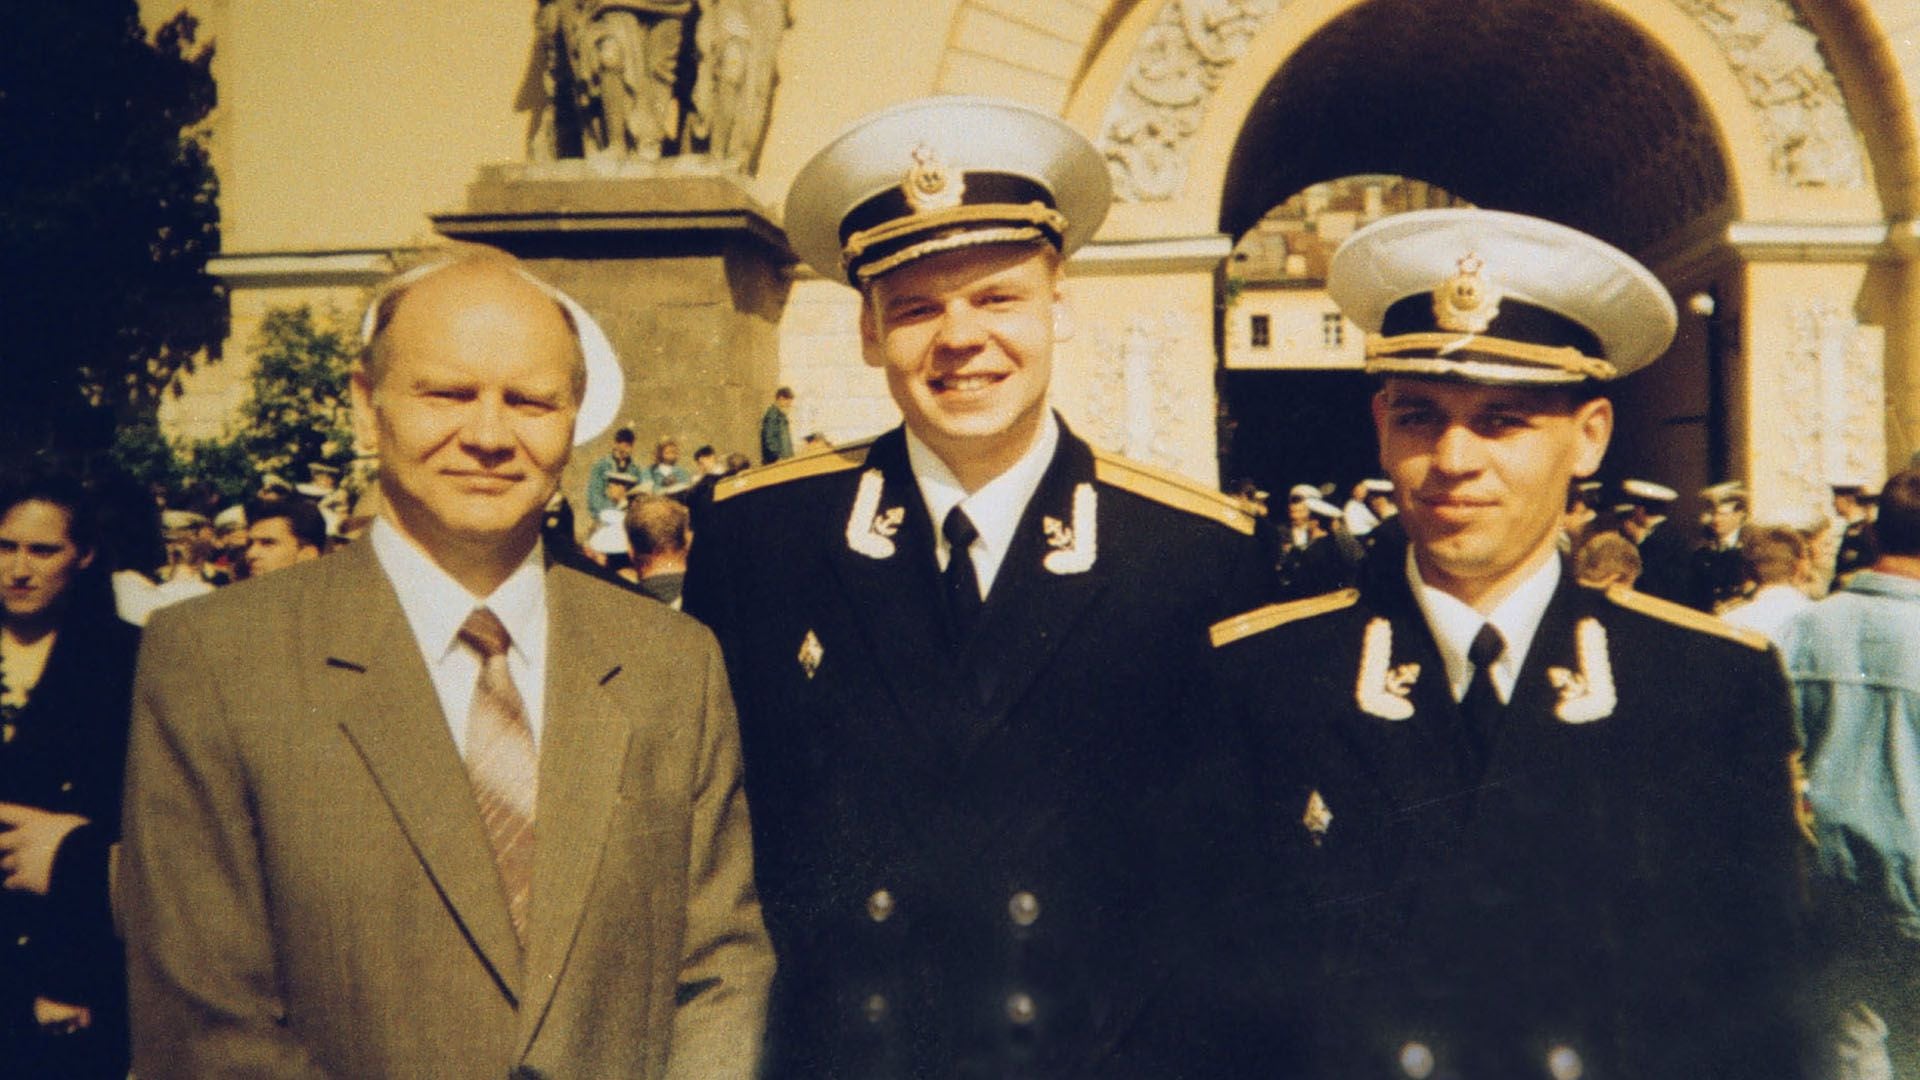 El teniente capitán Dmitry Kolesnikov, en el centro, junto a su padre Roman y un compañero de la marina. Kolesnikov fue uno de los 118 marinos que murieron en la tragedia del Kursk (Photo by Wojtek Laski/Getty Images)